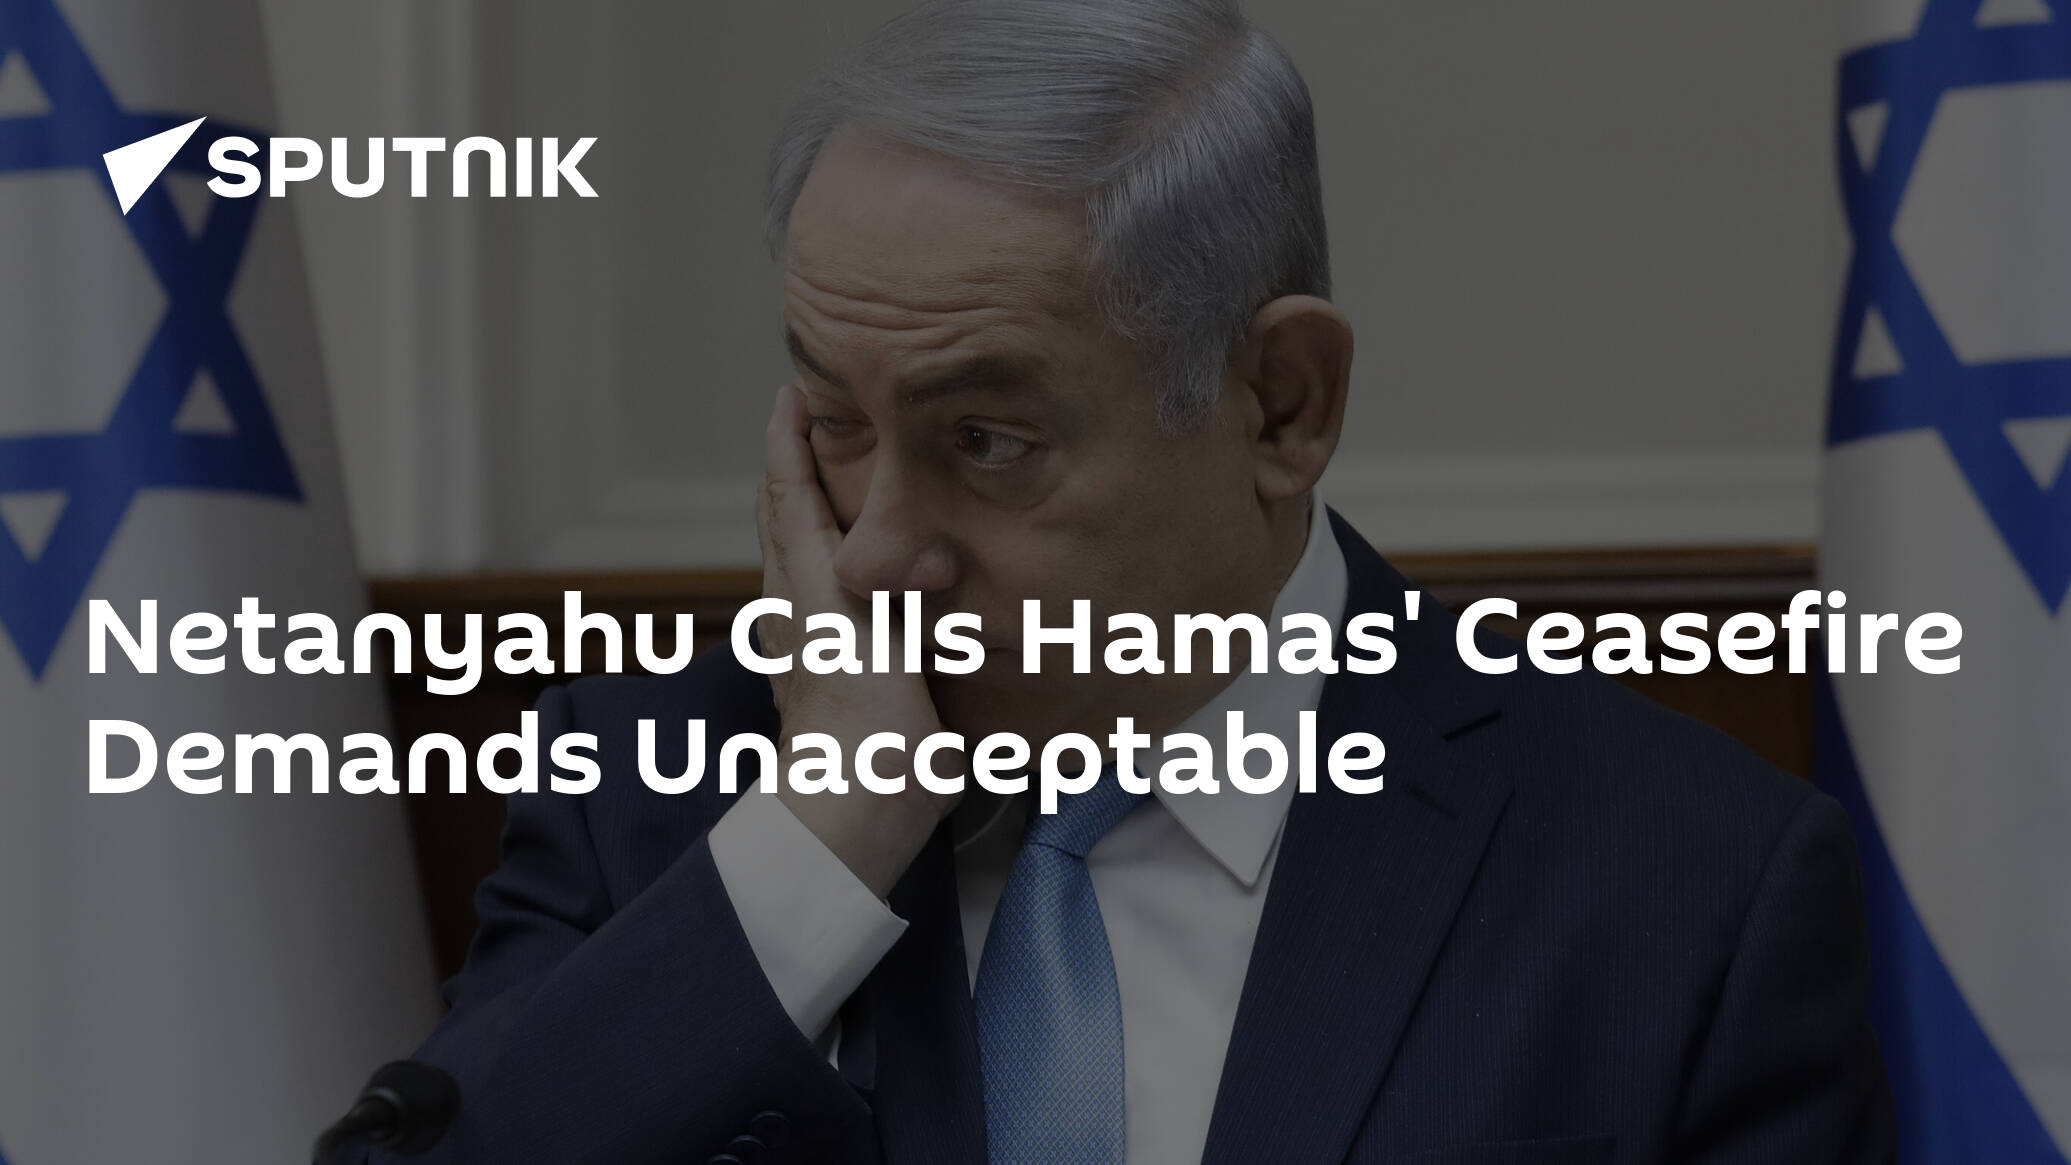 Netanyahu Calls Hamas' Ceasefire Demands Unacceptable